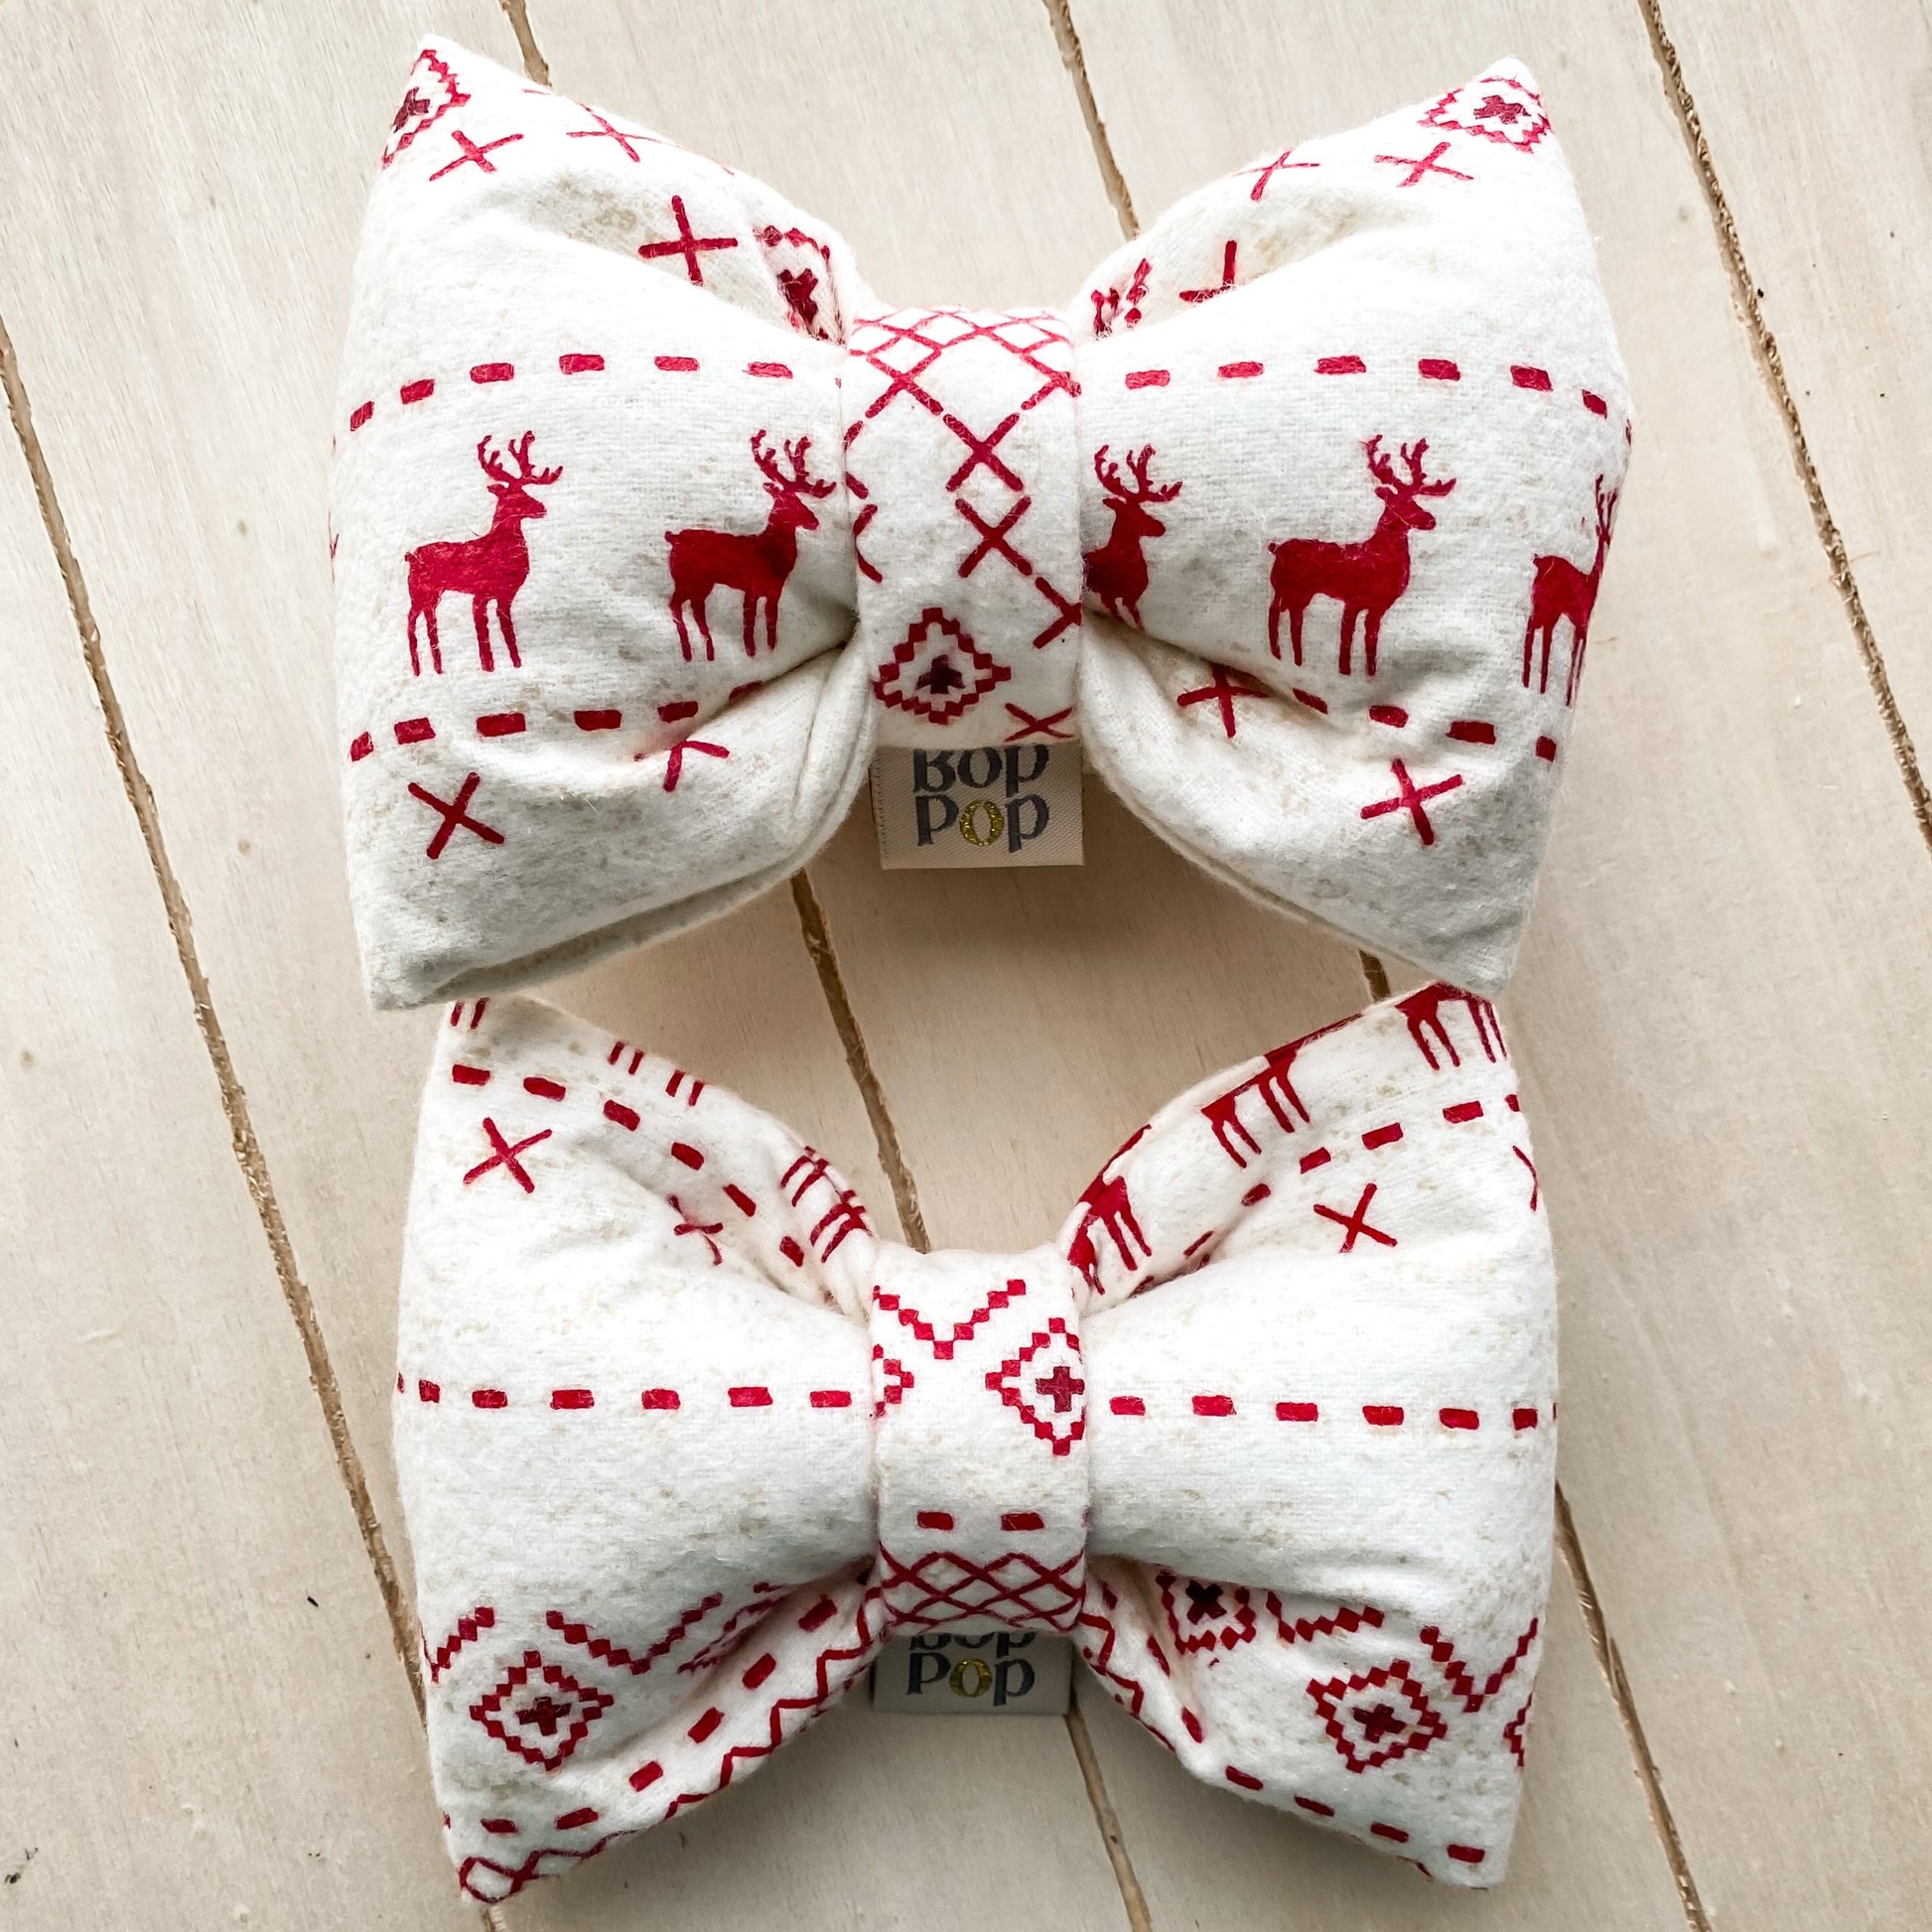 Vintage cabin Sweater reindeer caribou flannel cotton knit style pet dog cat XXL bow tie pet apparel bop pop pets